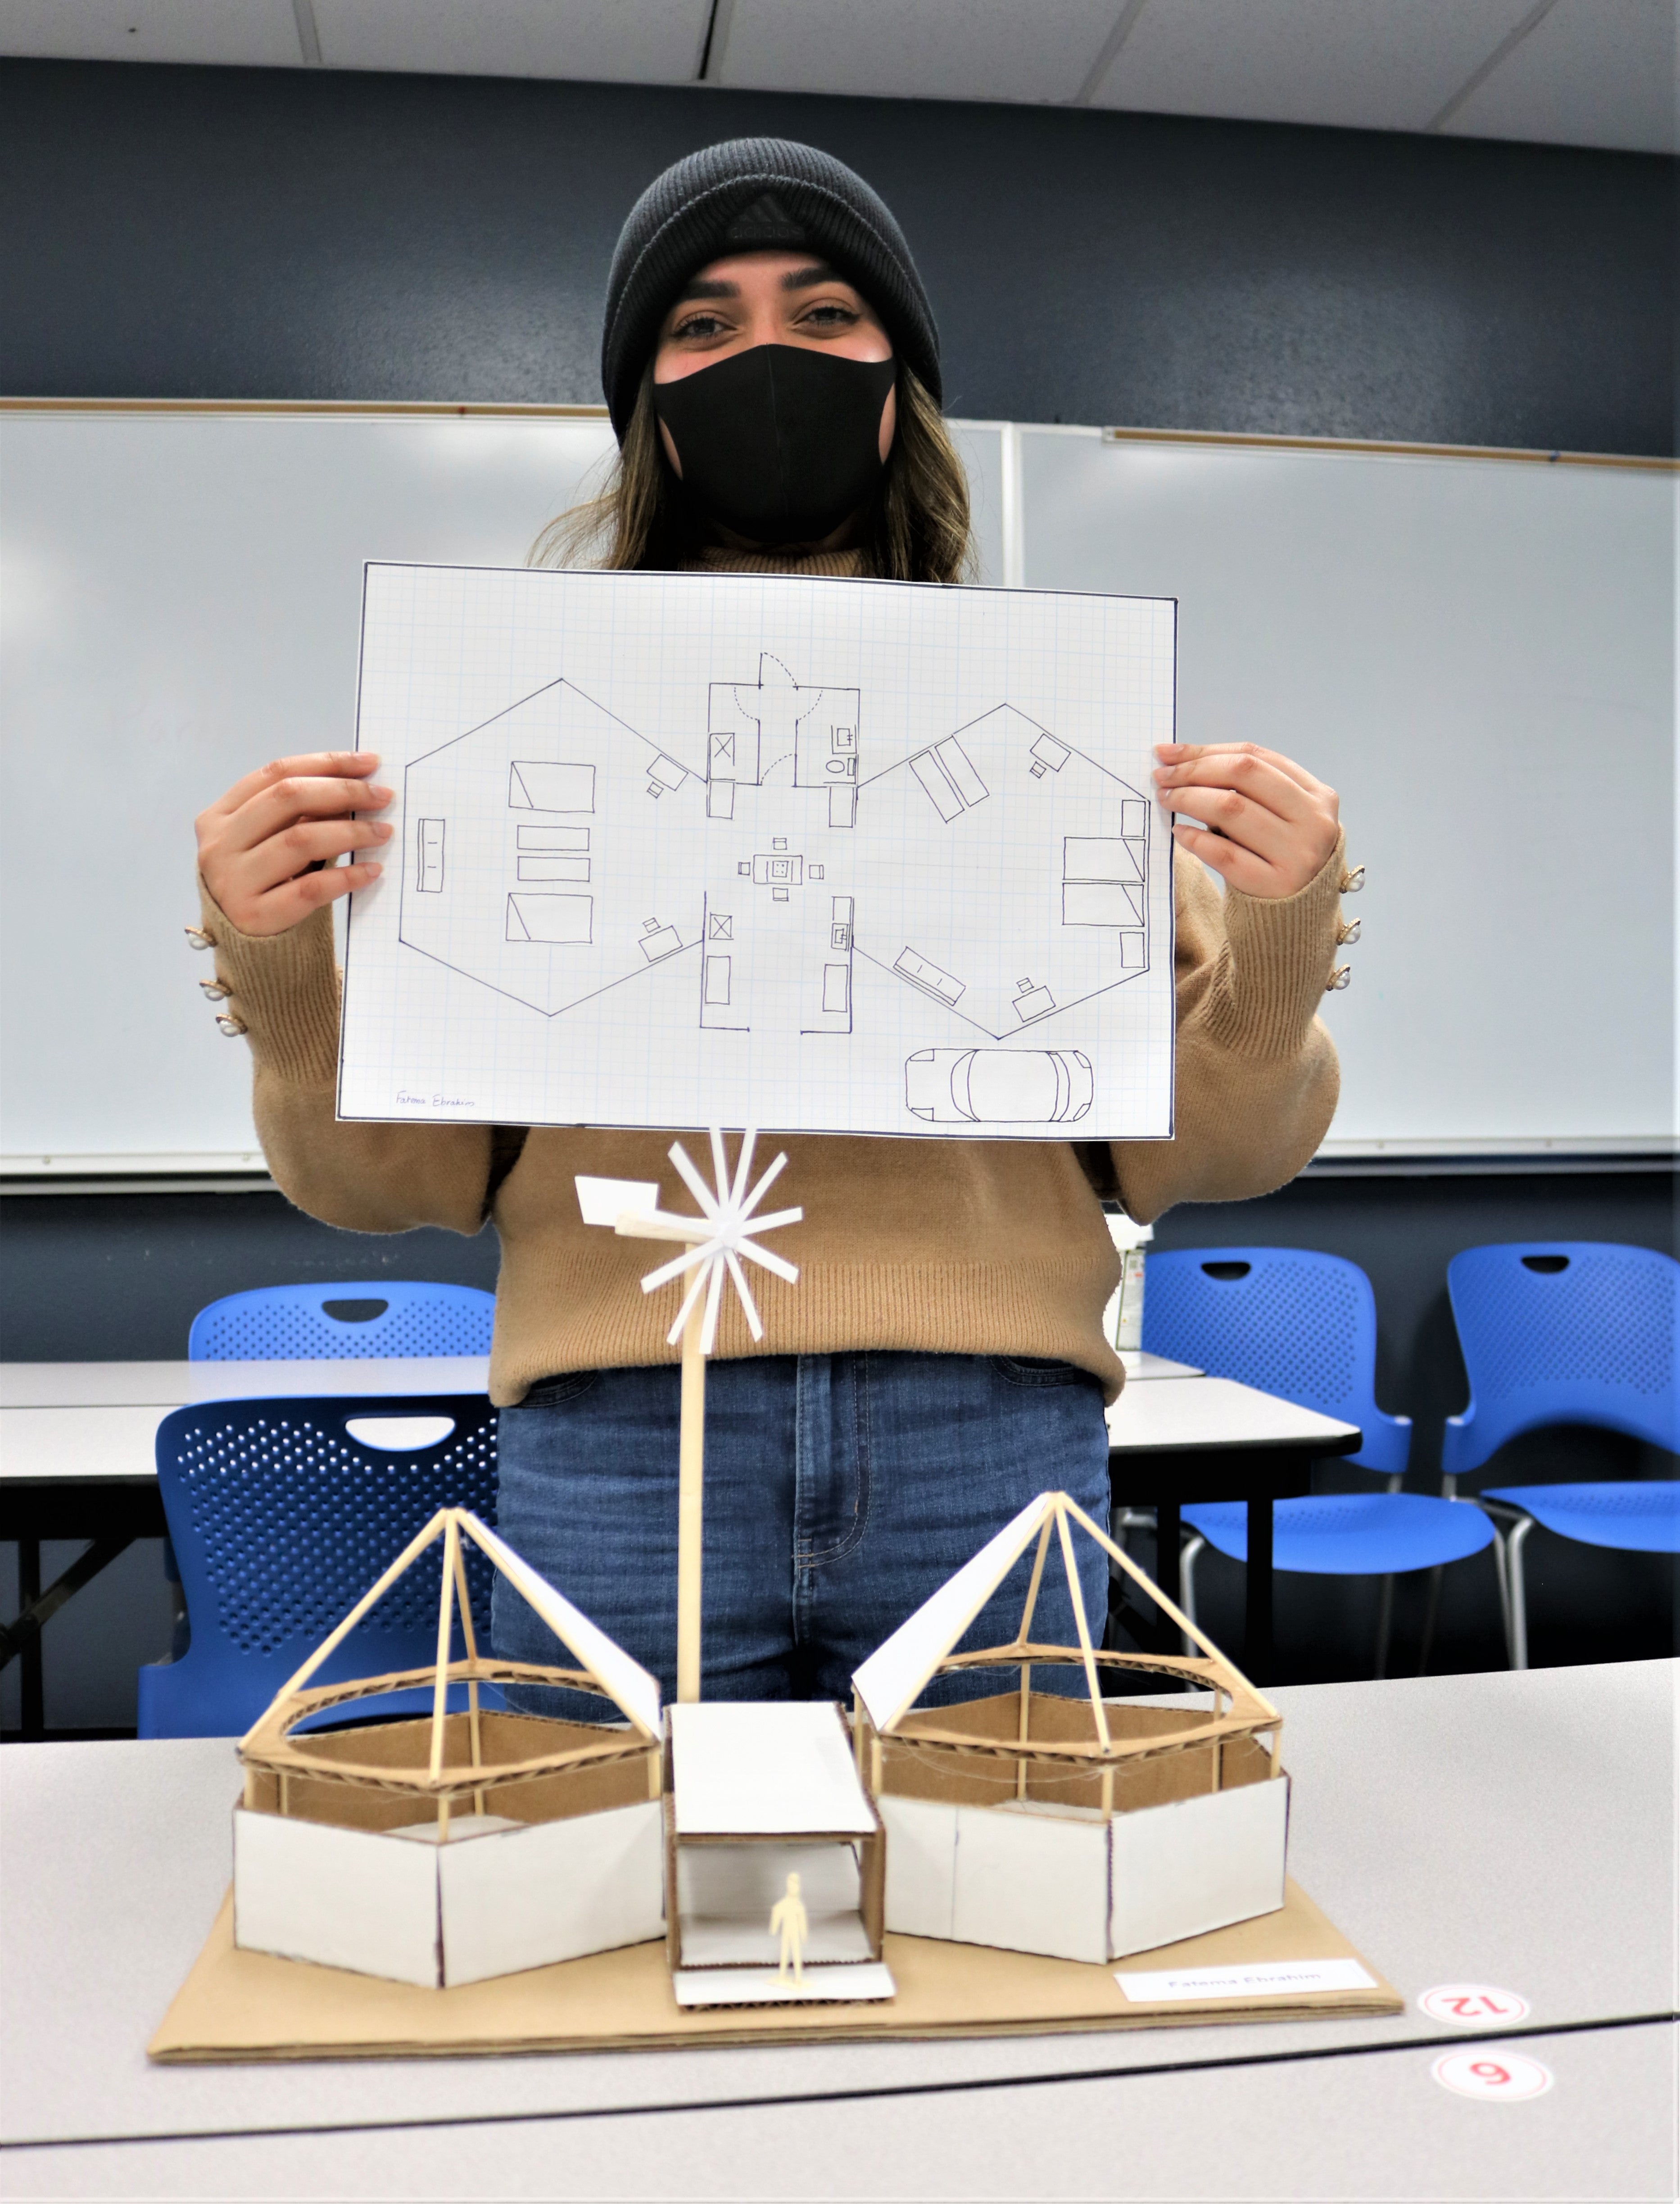 Ebrahim holds up paper design for model